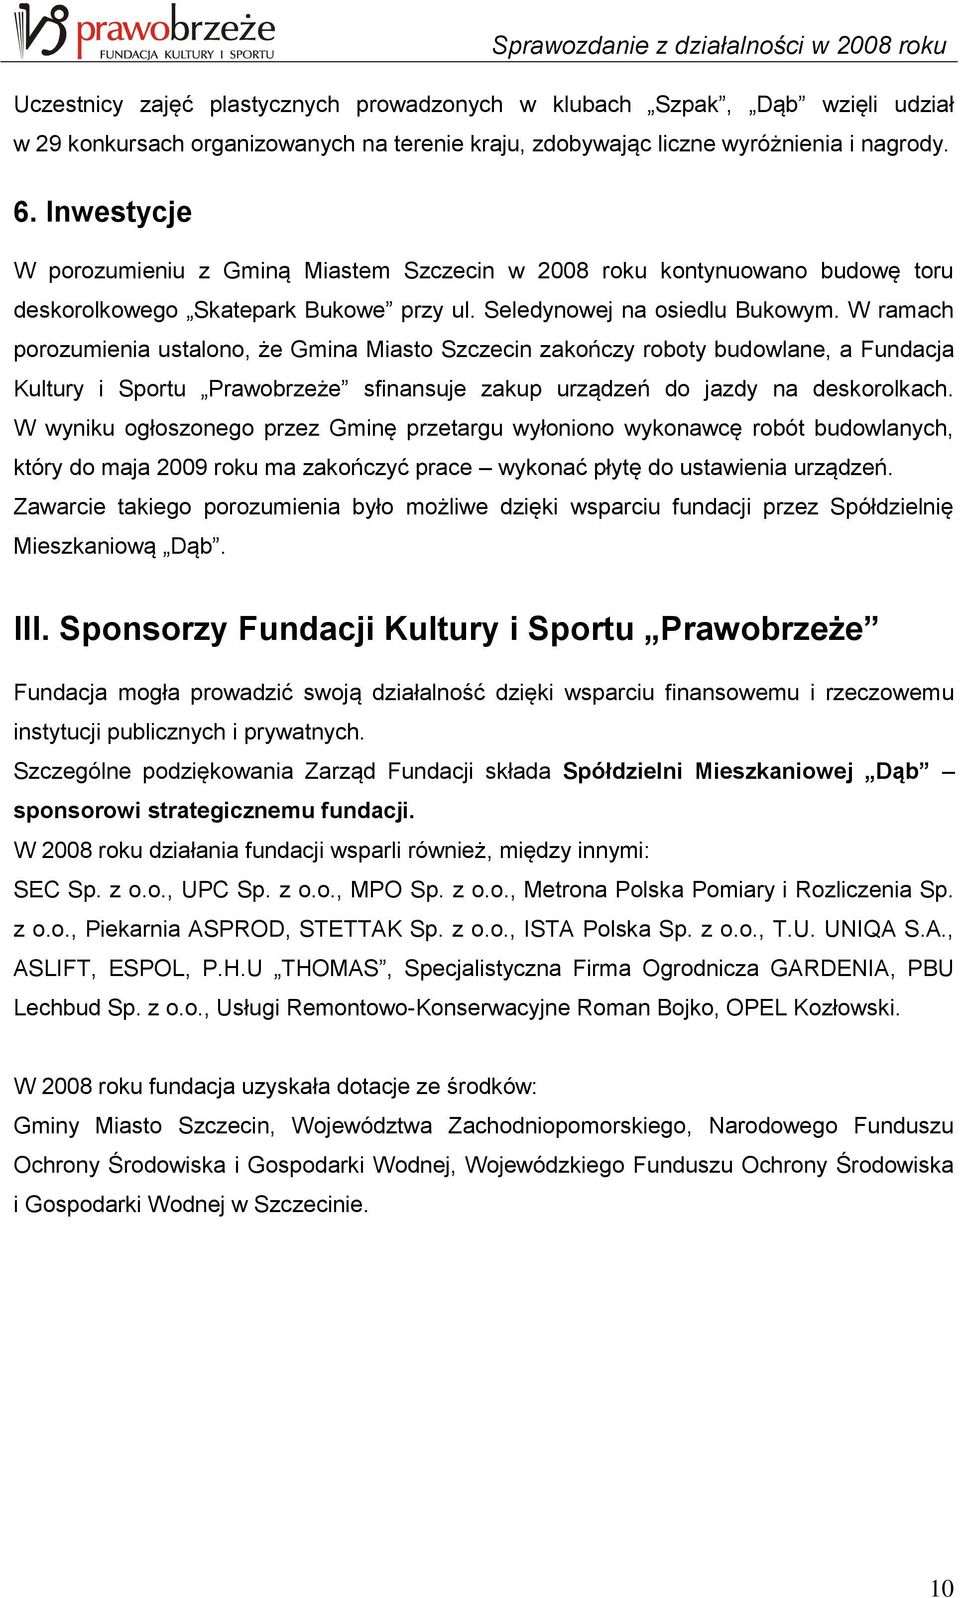 W ramach porozumienia ustalono, że Gmina Miasto Szczecin zakończy roboty budowlane, a Fundacja Kultury i Sportu Prawobrzeże sfinansuje zakup urządzeń do jazdy na deskorolkach.